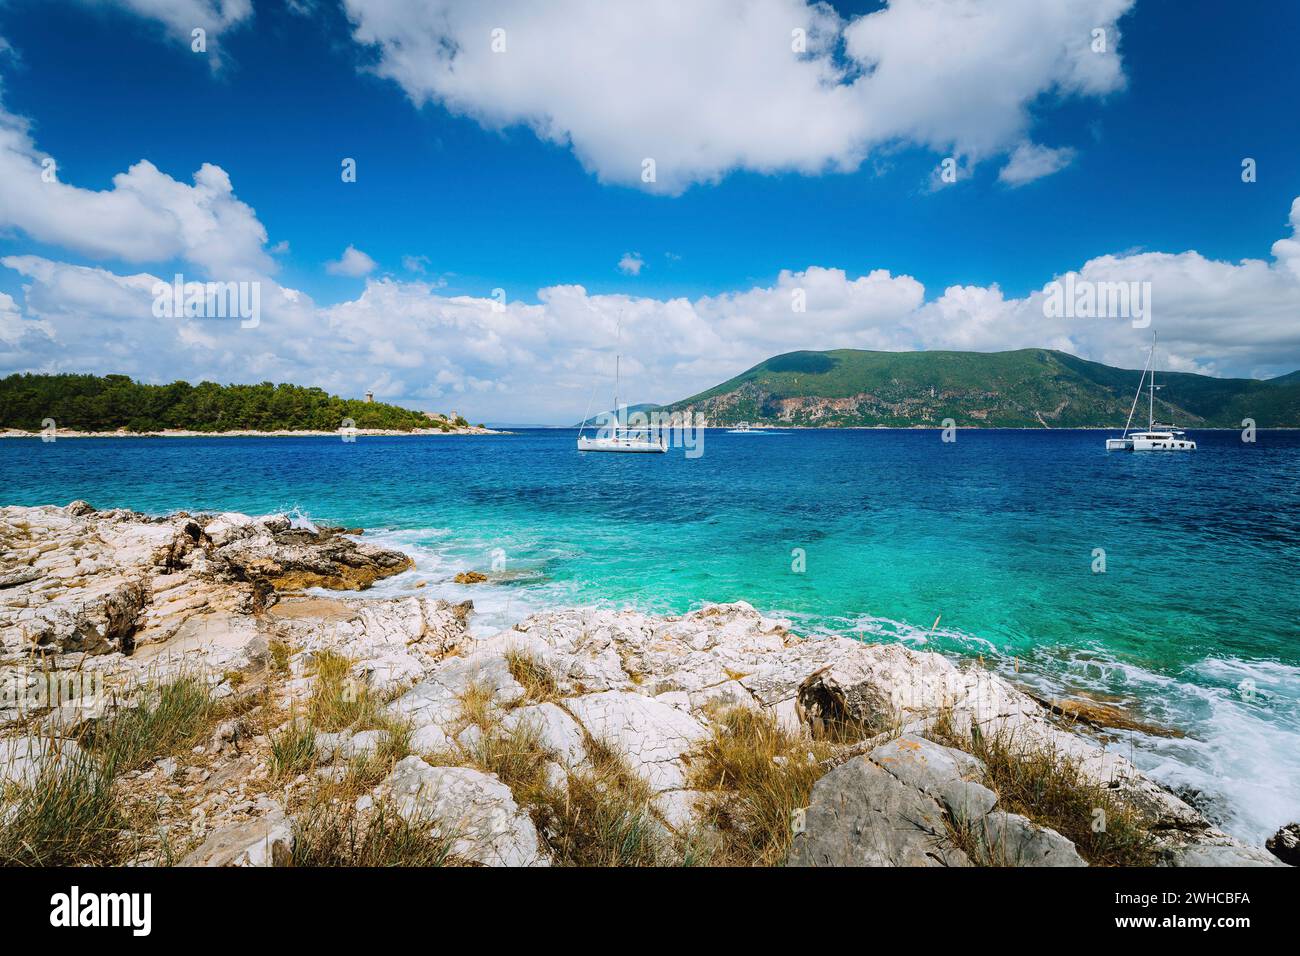 Yachten treiben mitten im offenen kristallklaren, smaragdgrünen Meerwasser in der Nähe von Fiskardo. Ithaki Island im Hintergrund. Erstaunliche weiße Wolkenlandschaft, die sich im blauen Himmel bewegt, Kefalonia, Ionische Inseln, Griechenland. Stockfoto